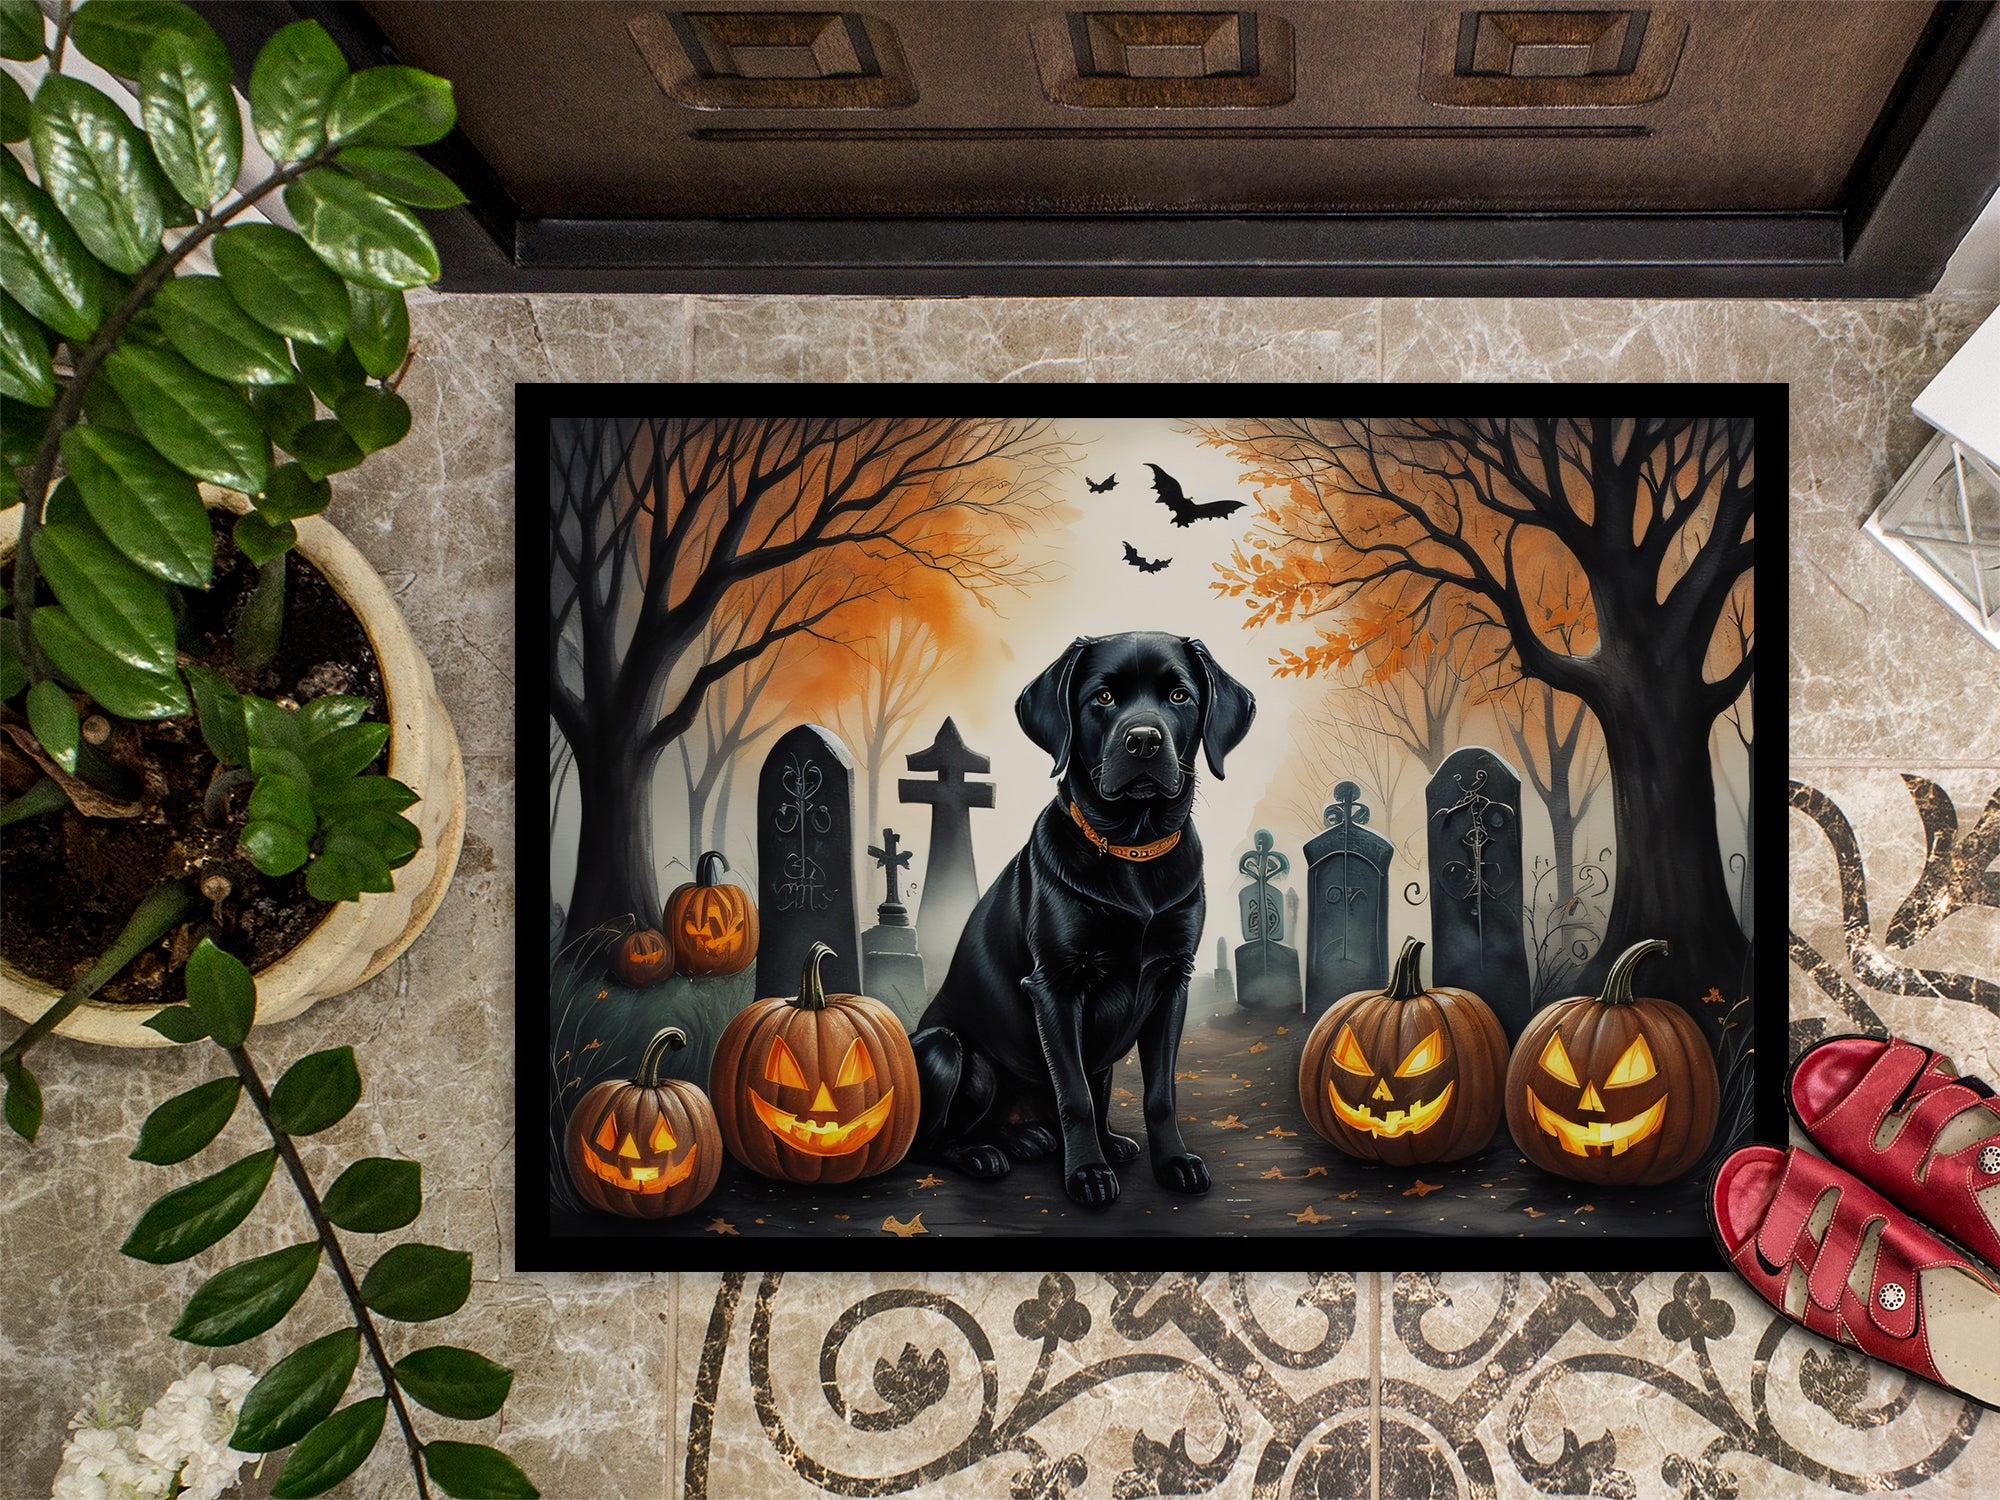 Black Labrador Retriever Spooky Halloween Doormat 18x27